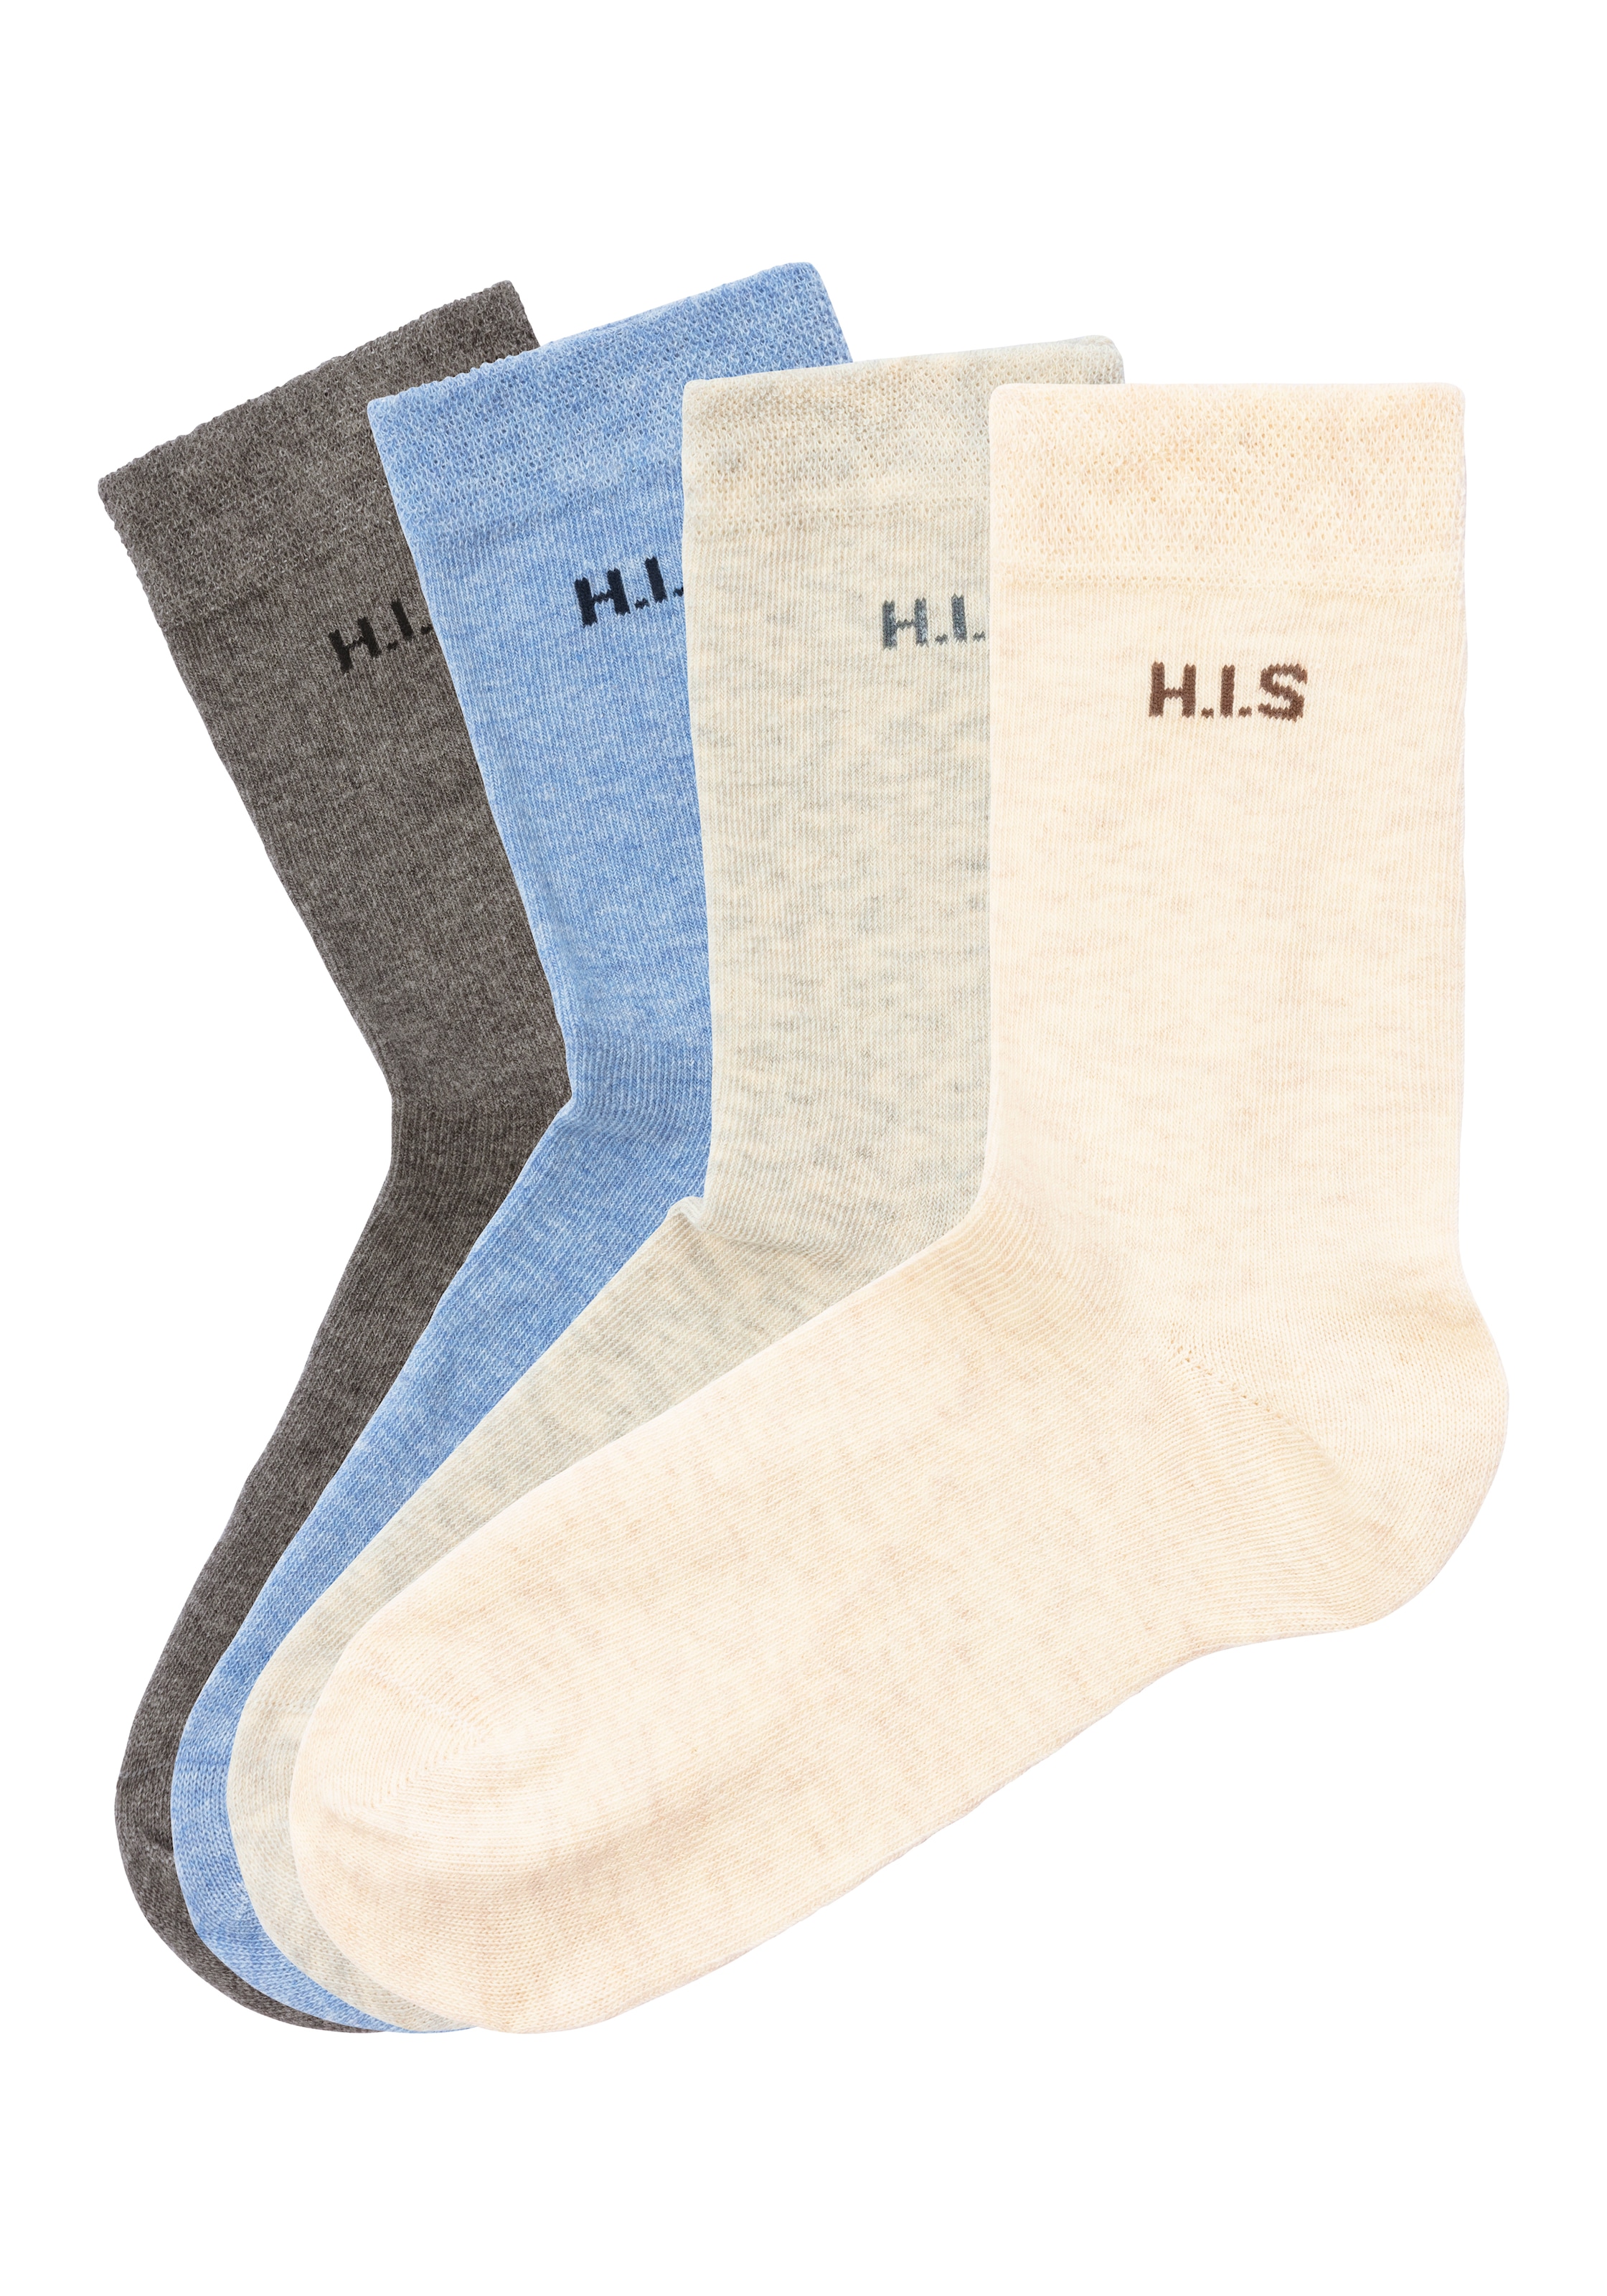 H.I.S Socken, (4 Paar), einschneidendes Raten Bündchen auf ohne kaufen